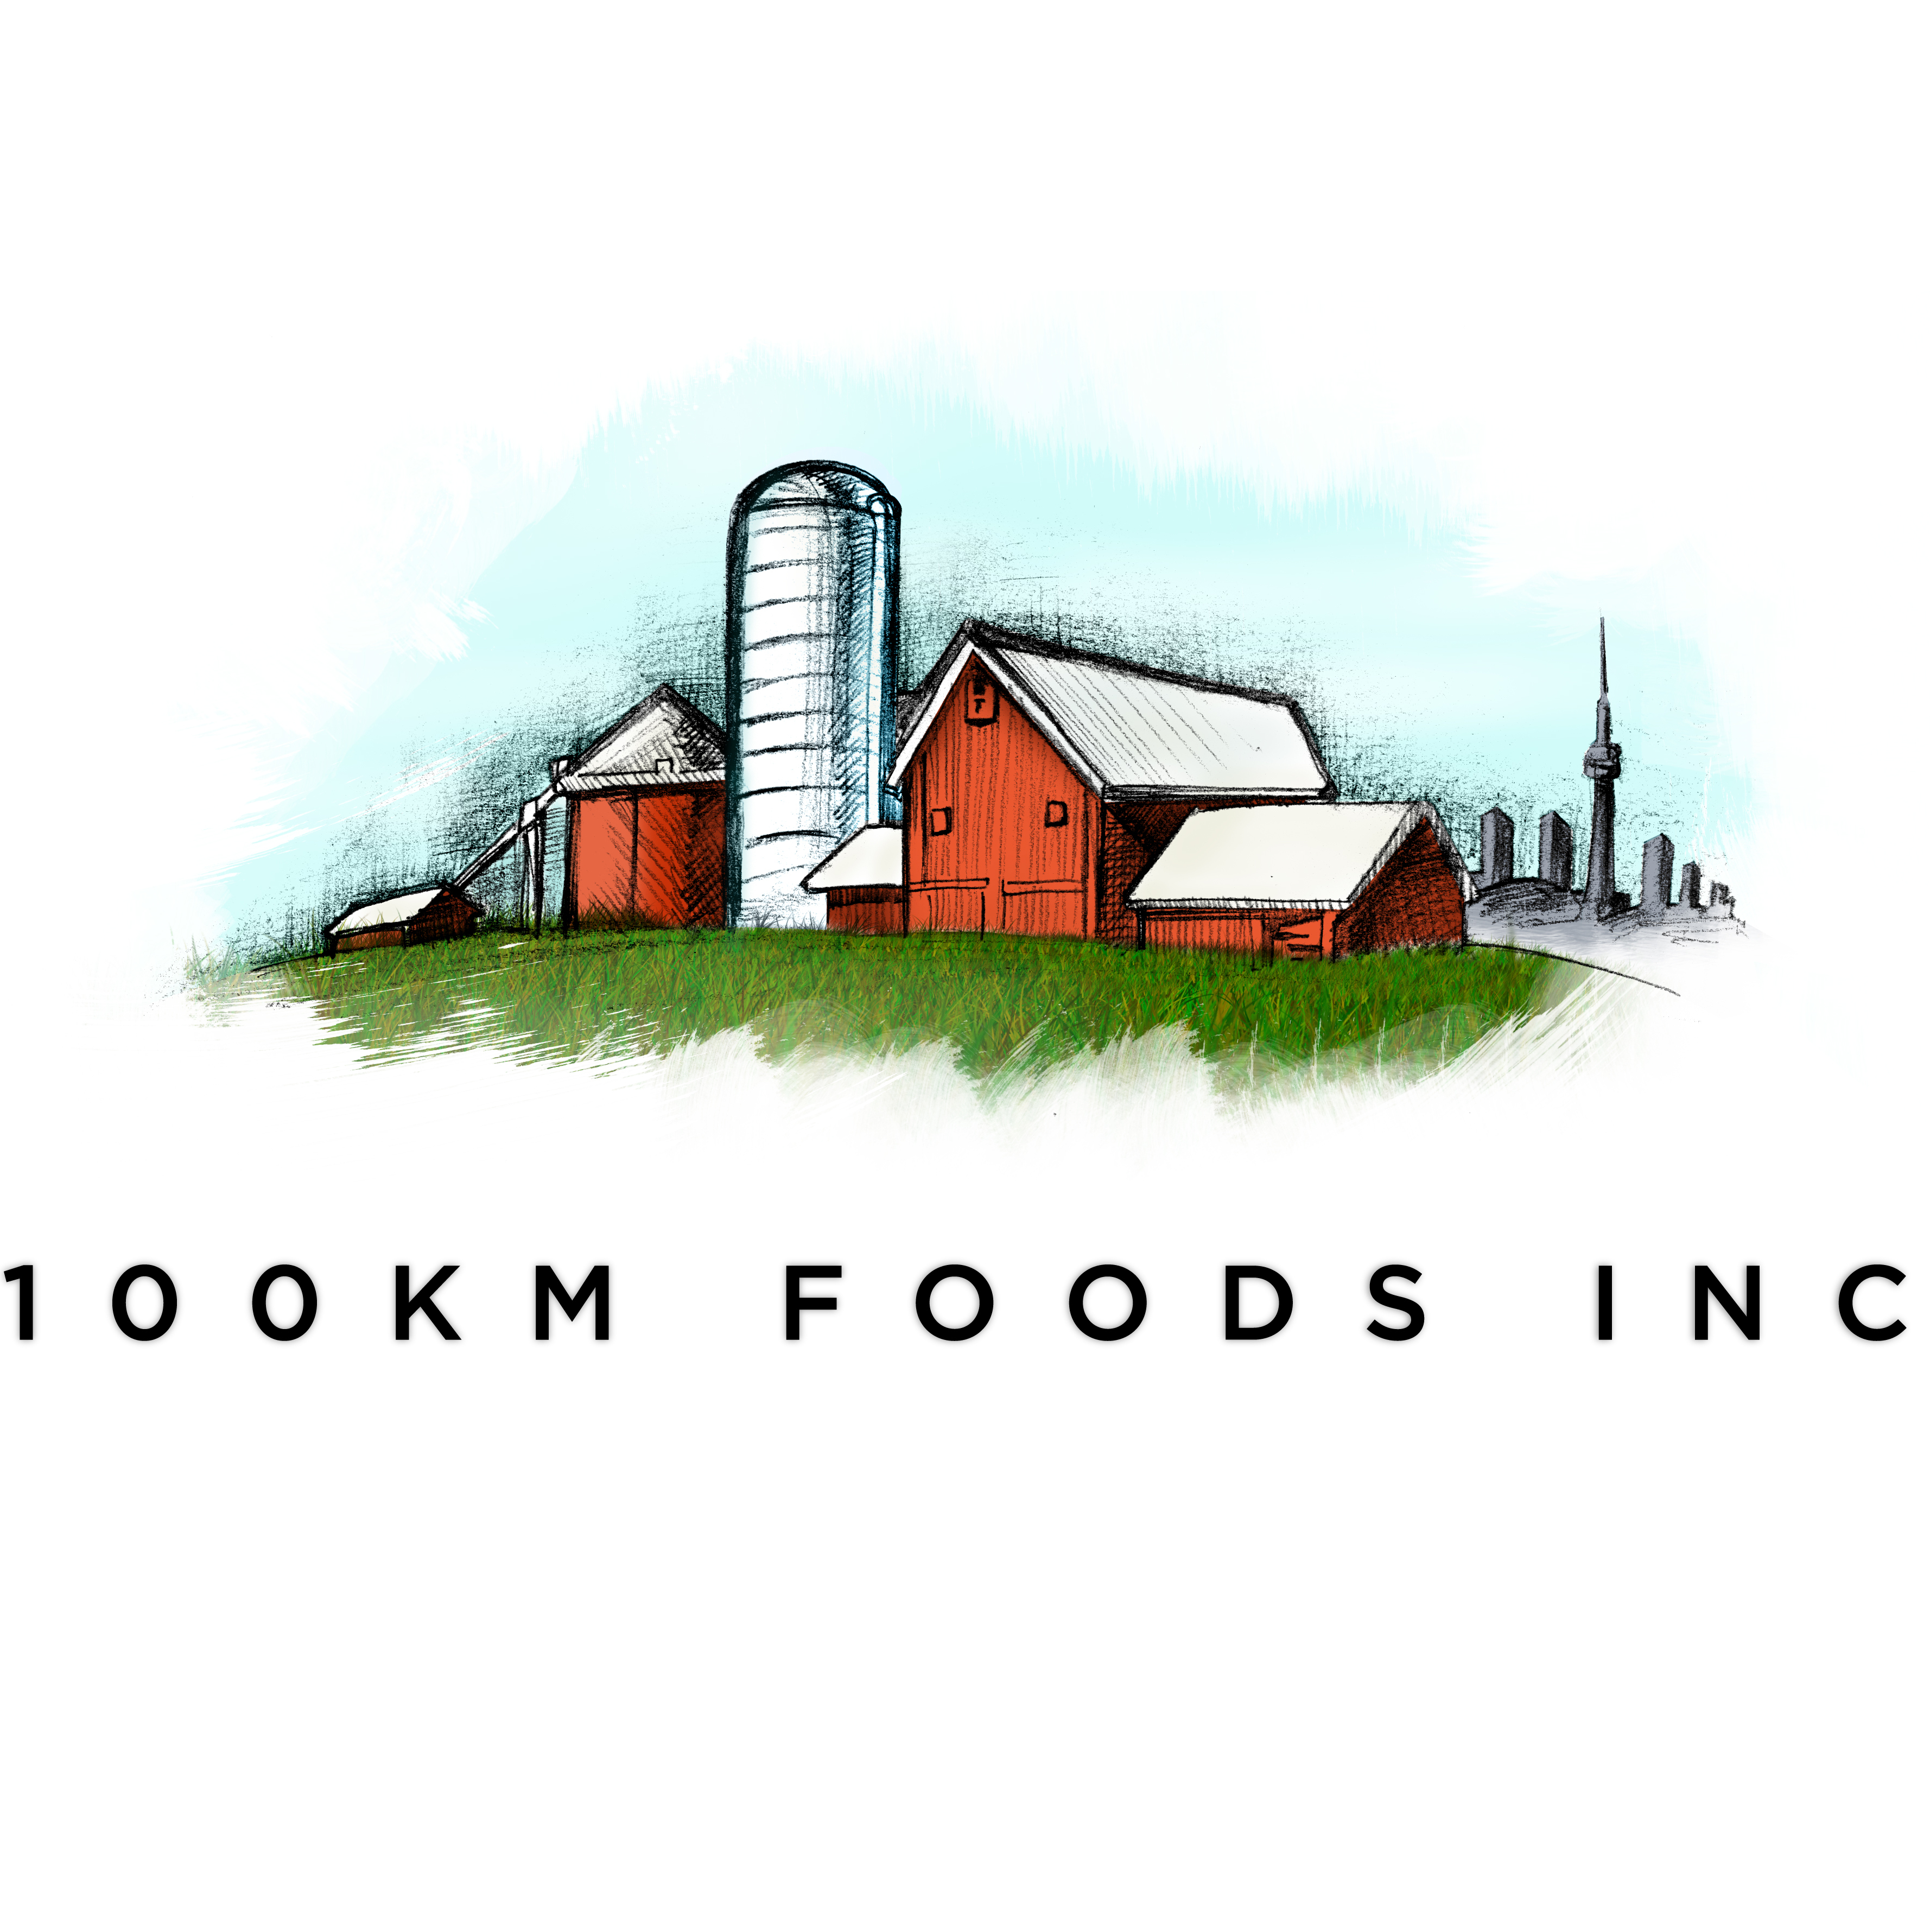 100km Foods Inc.